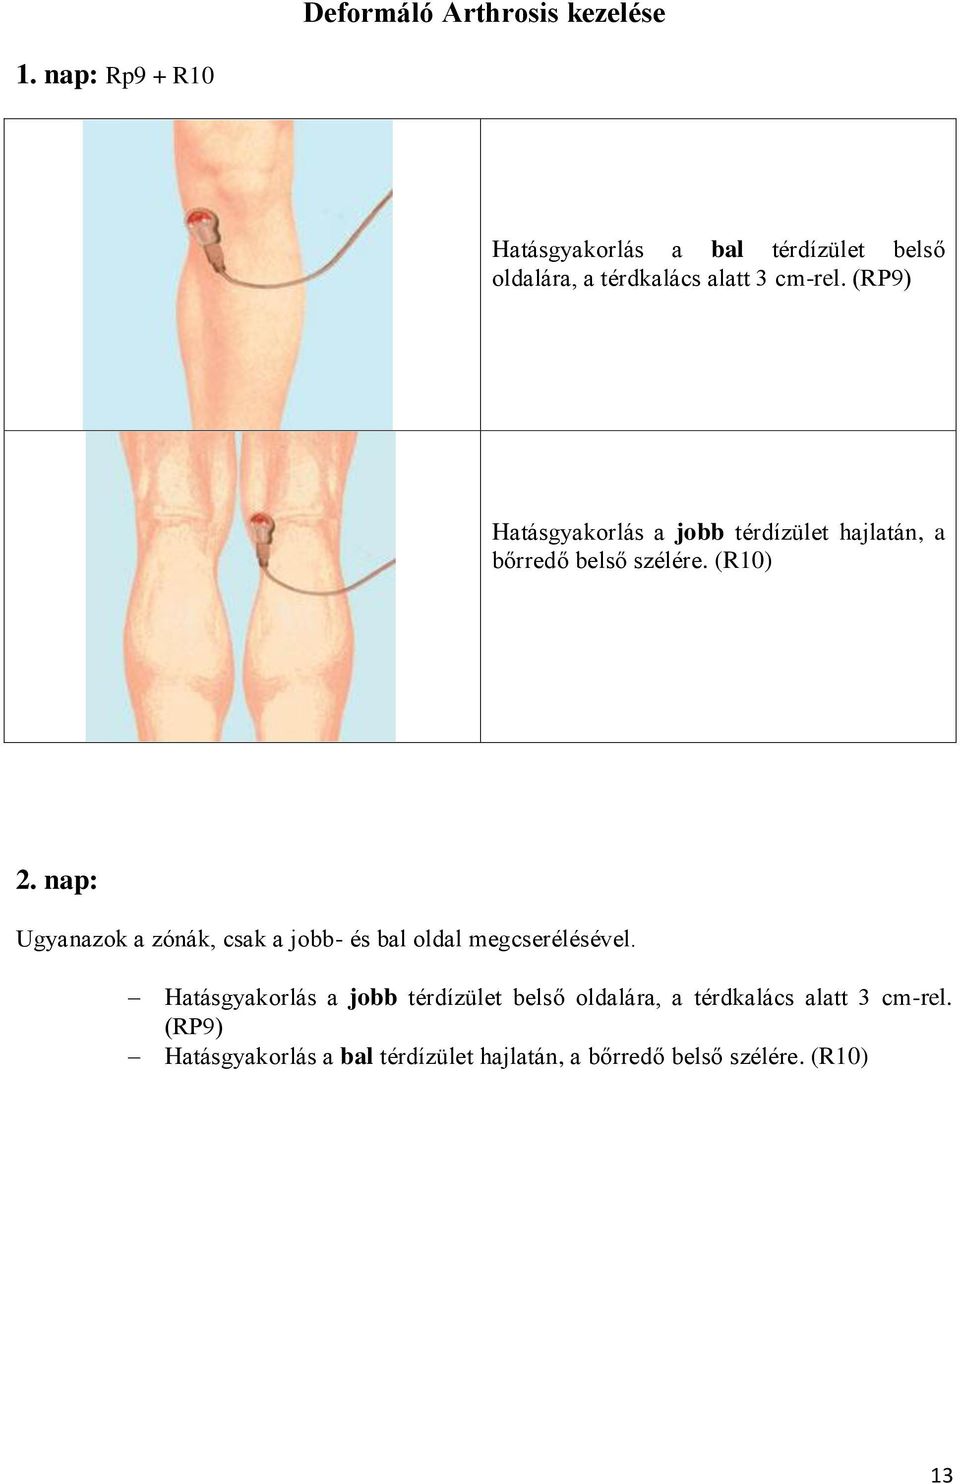 deformáló artrosis a bal boka ízületében)